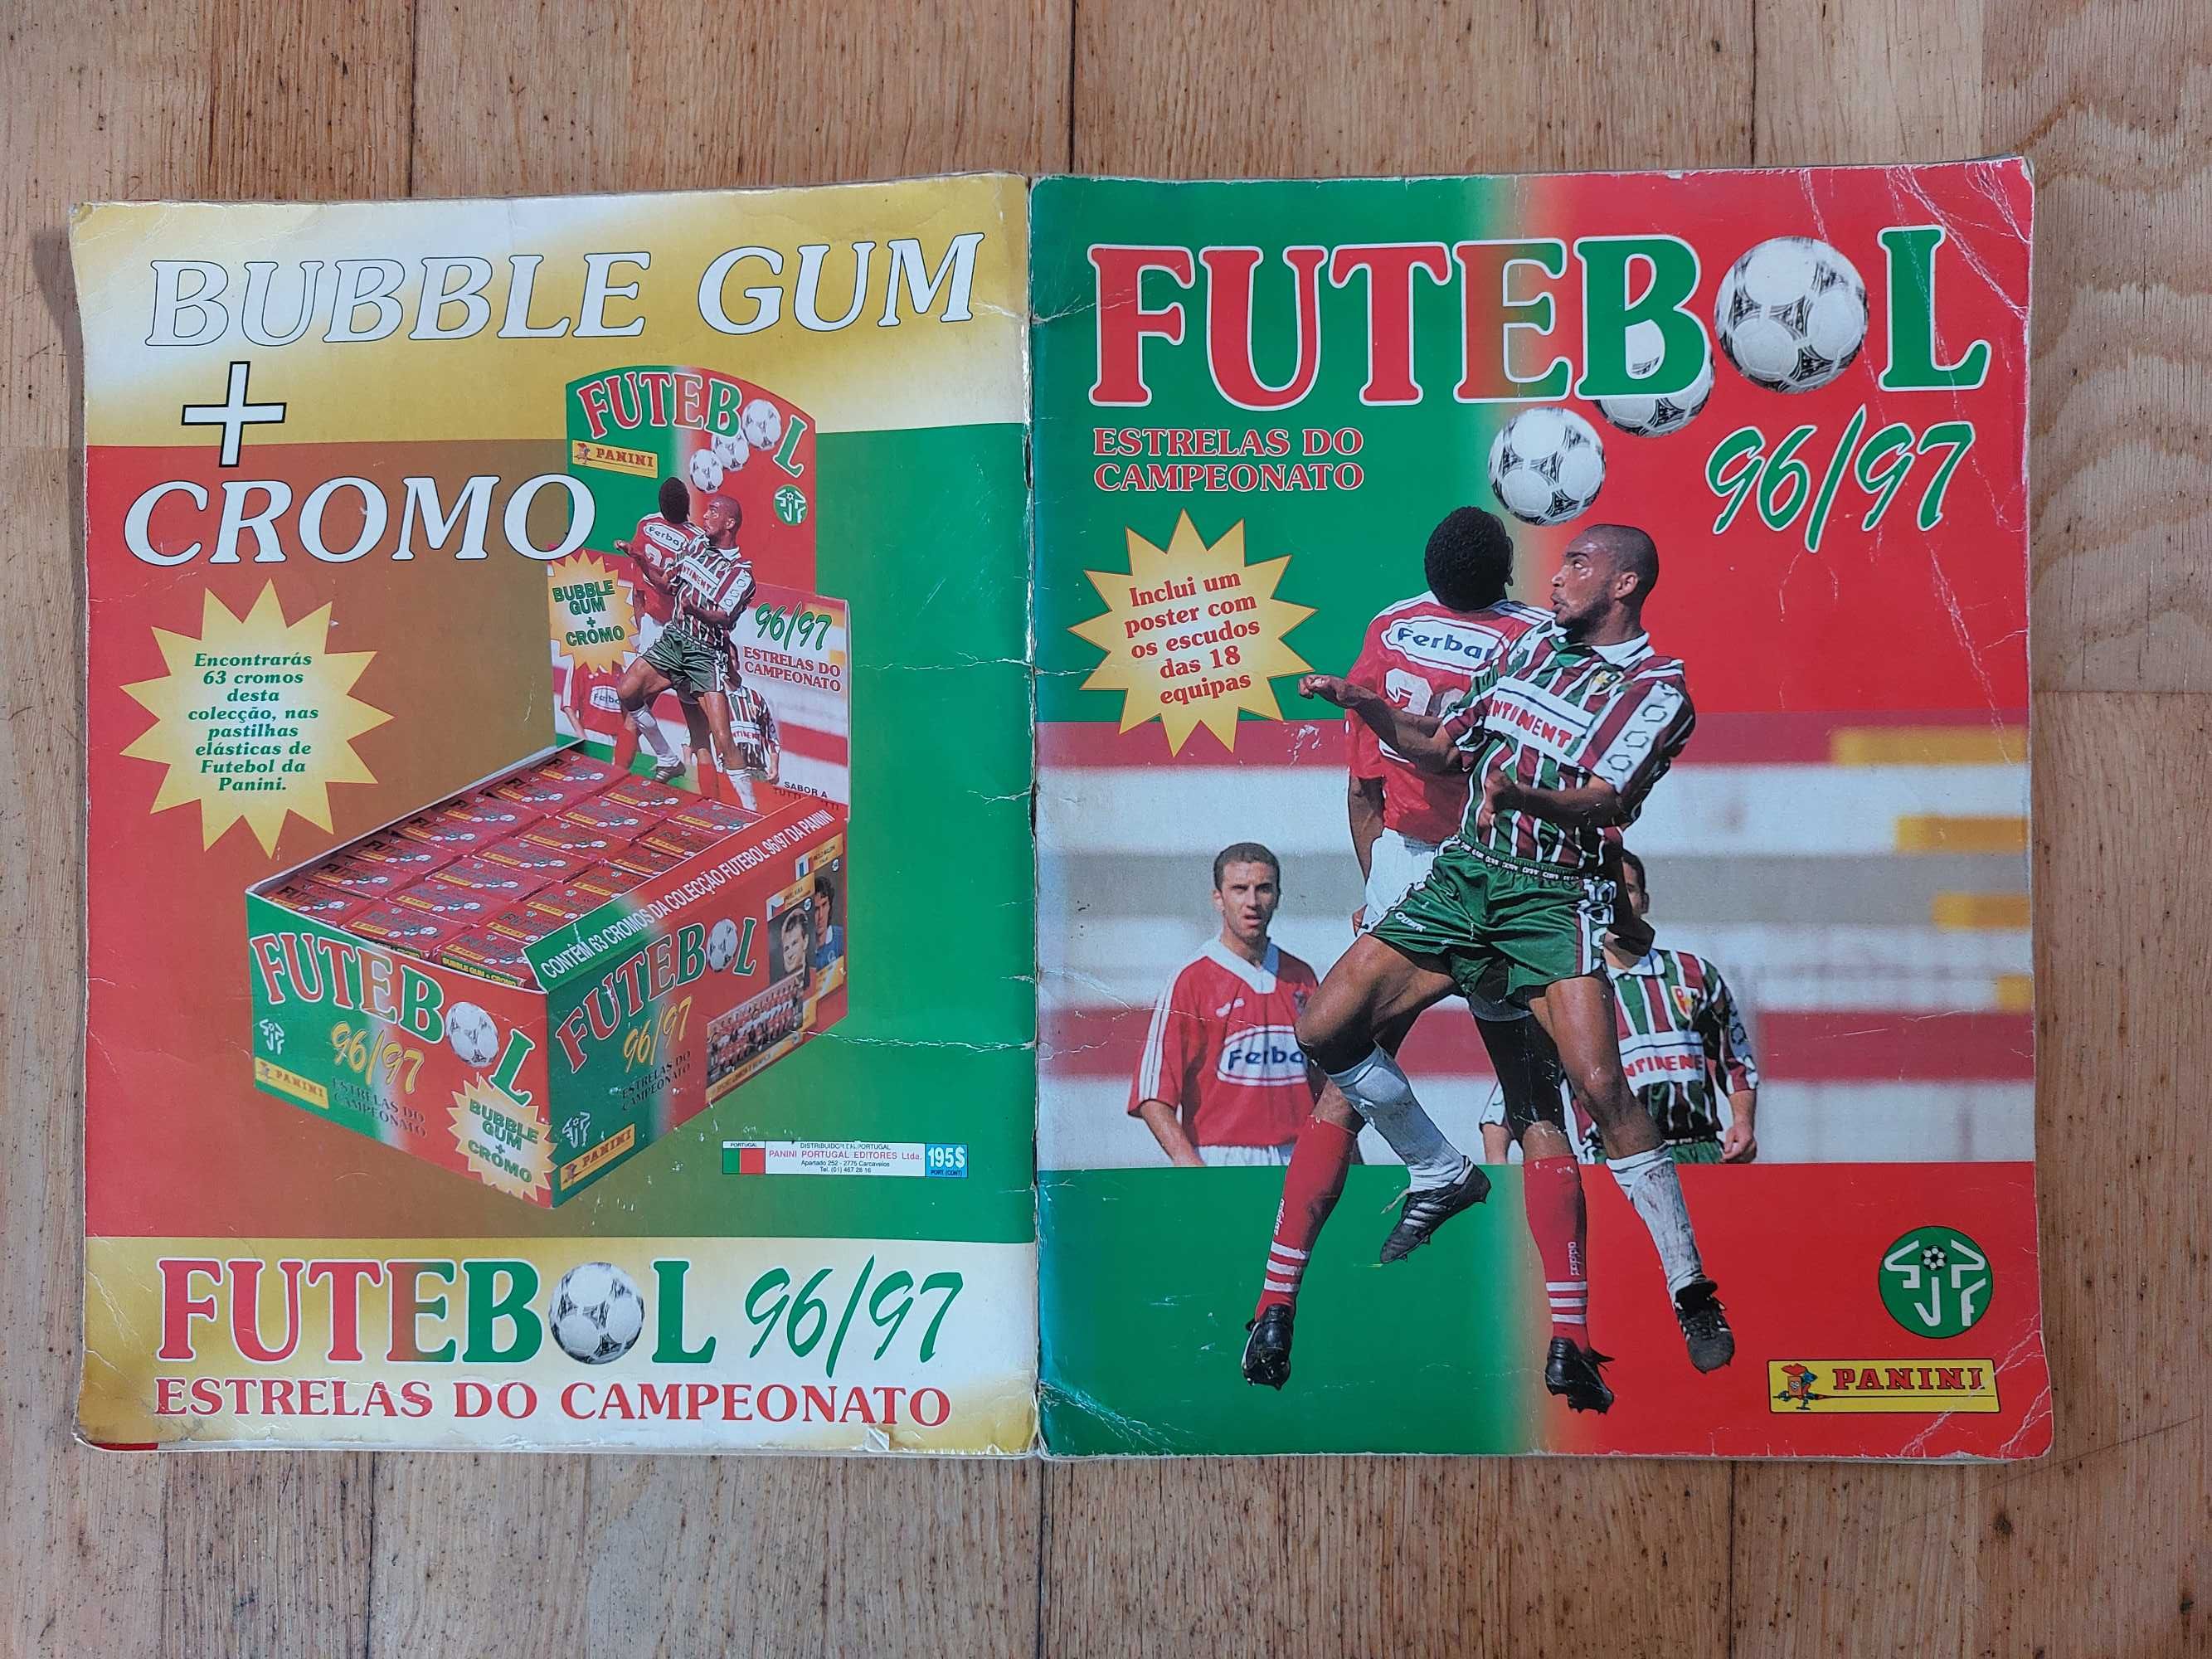 Caderneta de cromos "Futebol 96-97" - Completa